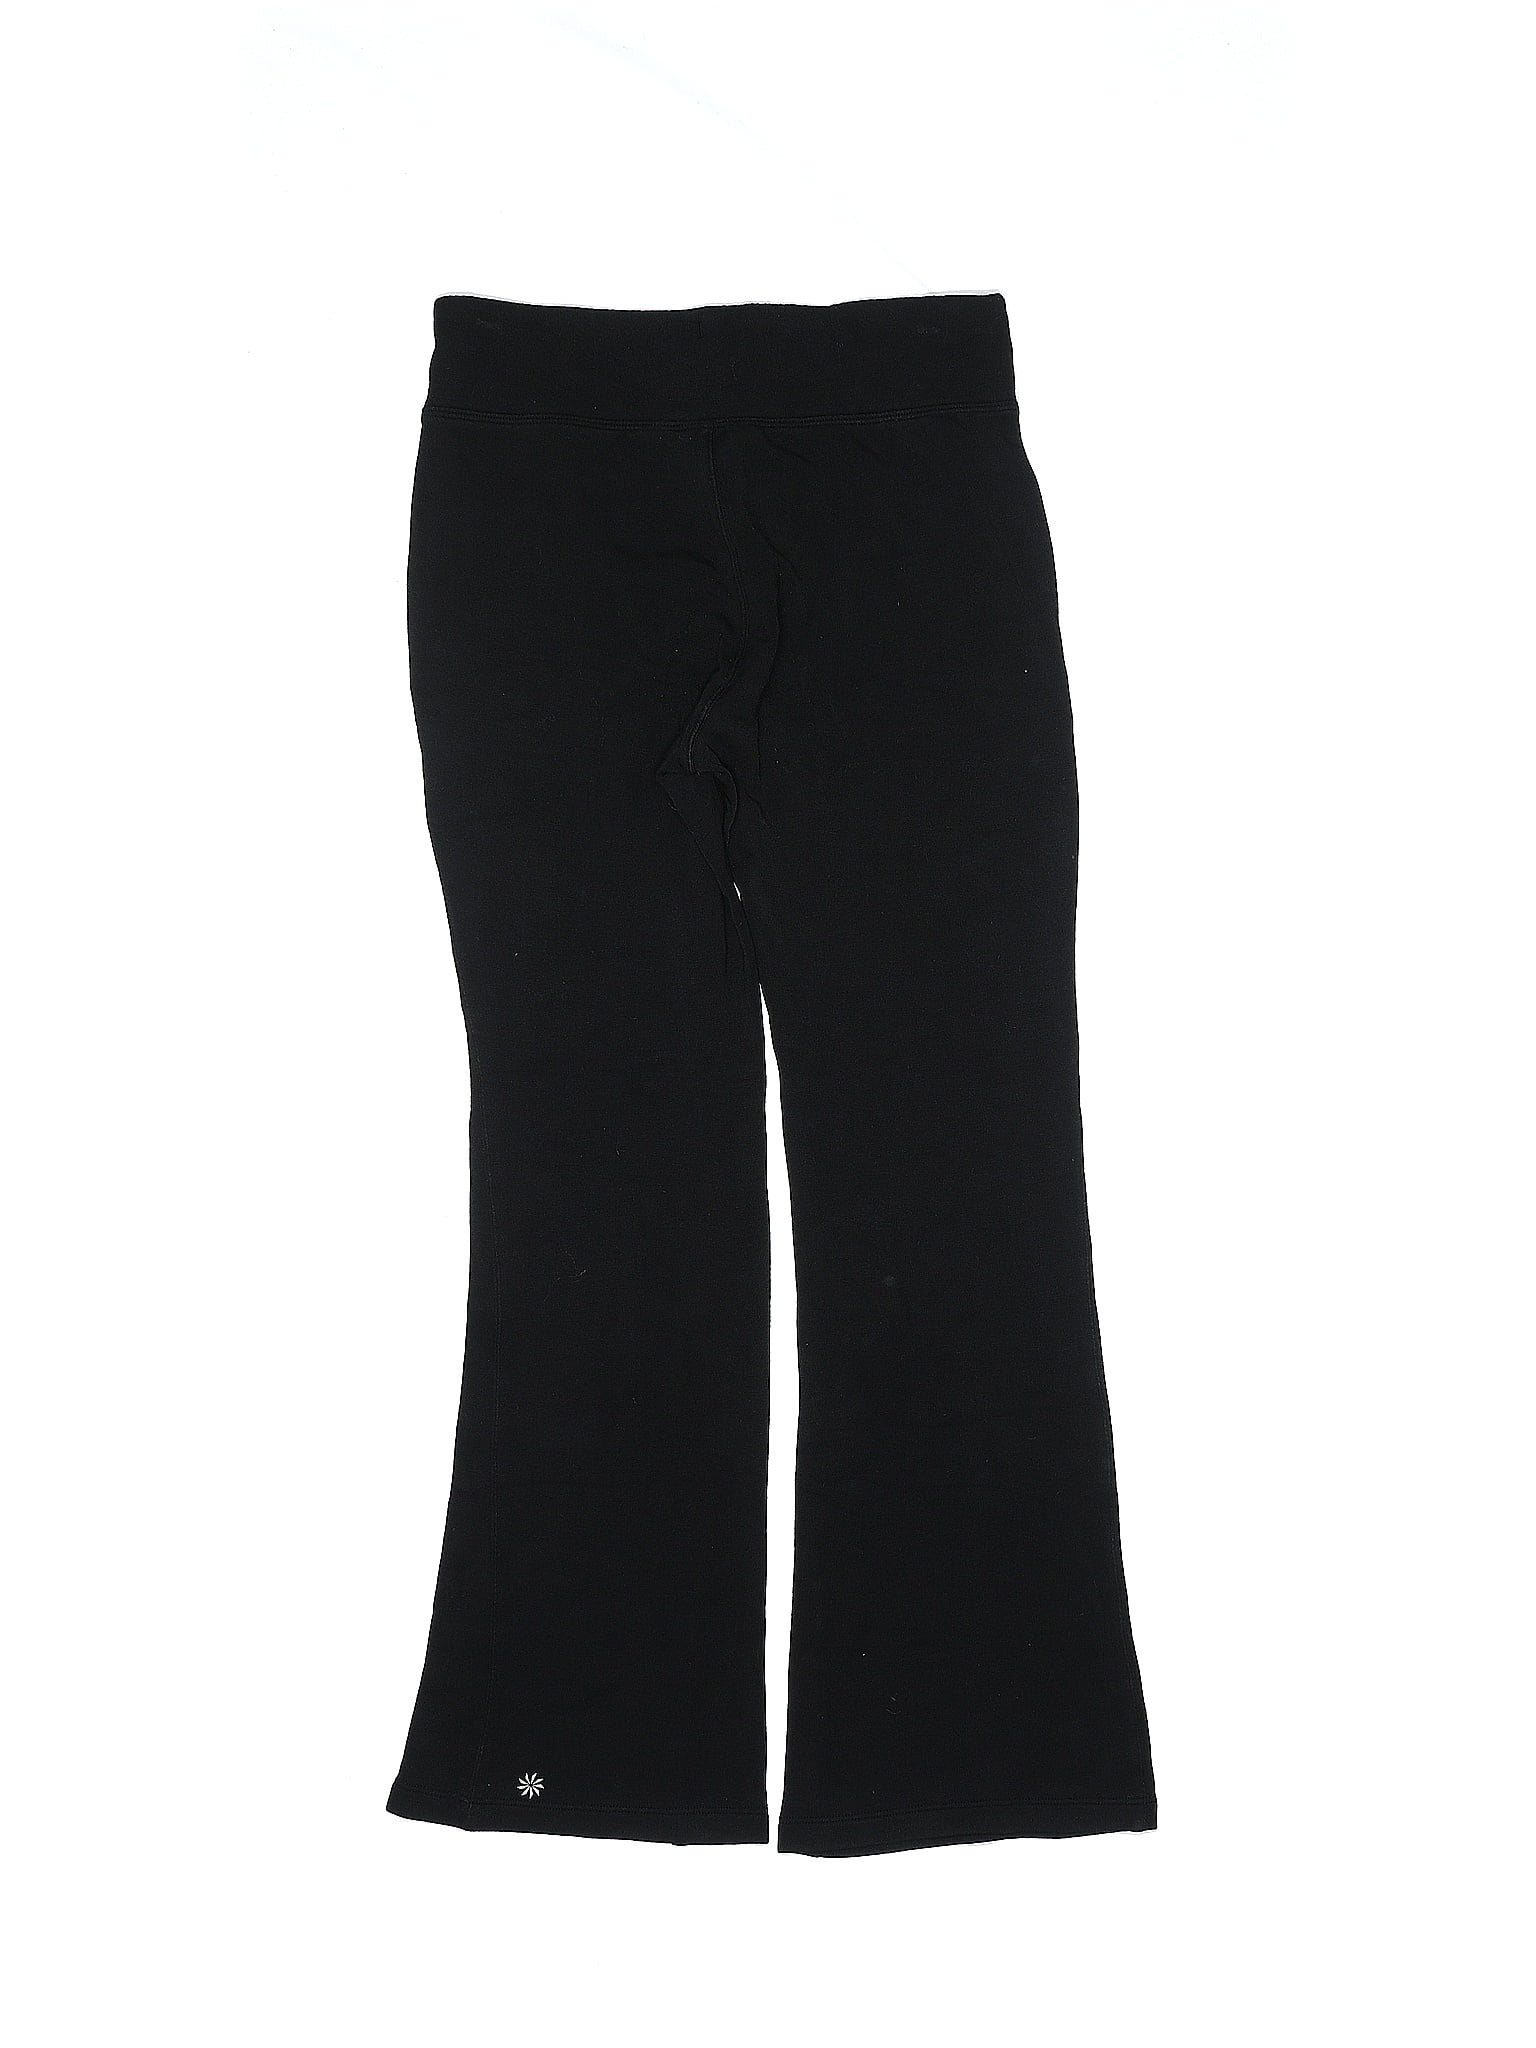 GAIAM Black Active Pants Size 1X (Plus) - 60% off